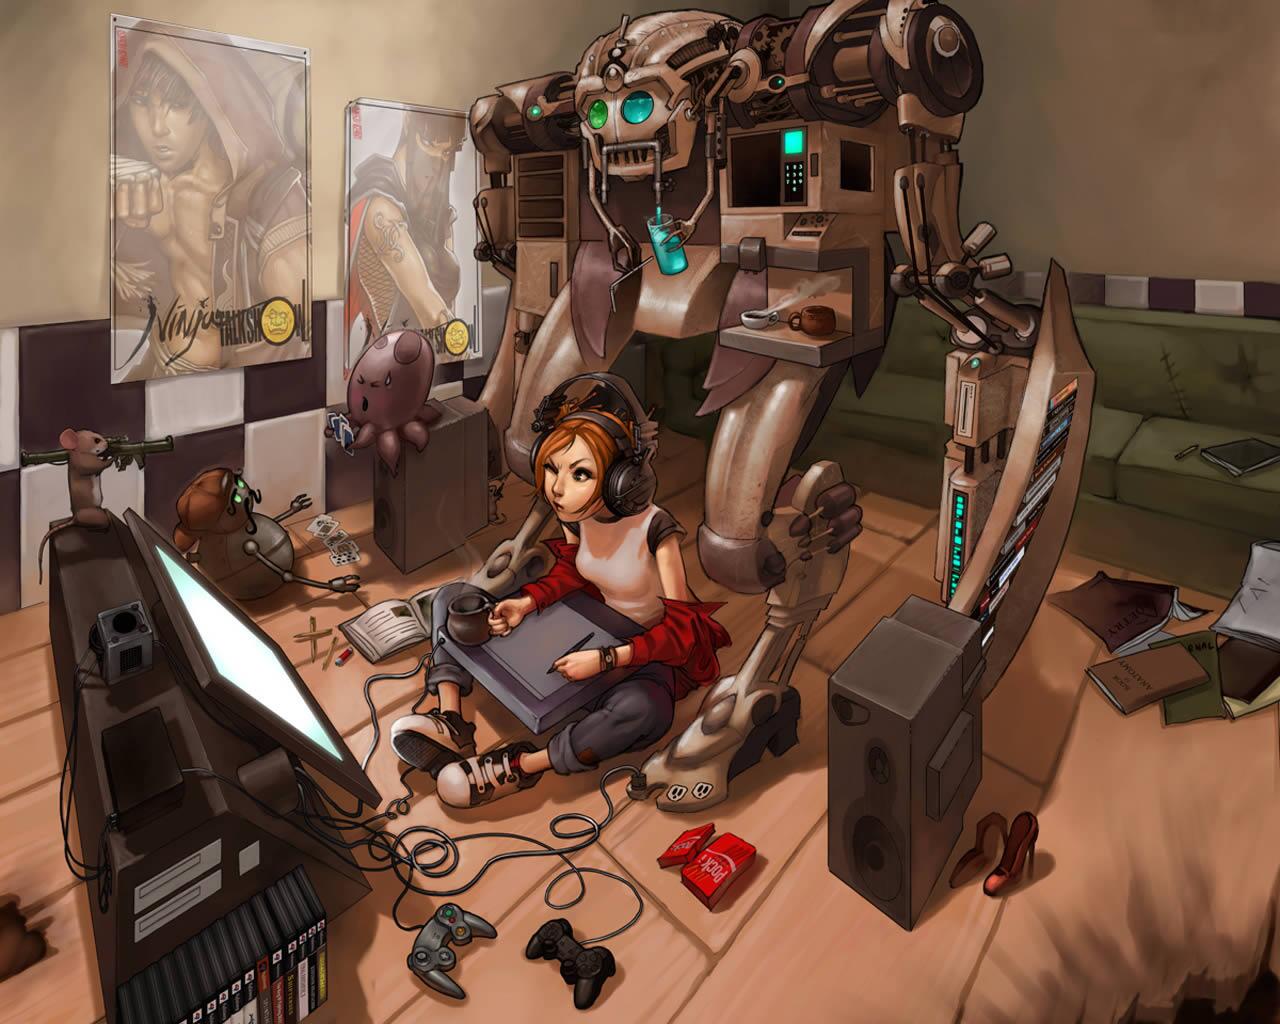 ট ইট র 無人機bot 女の子のゲーマー Devushka Gejmer ロシアのサイトで公開されていた女の子ゲーマーのイラスト 女の子の側にはロボットやゲーム機のコントローラなどが散らばっている ペンタブで絵を描いてるように思える Http T Co Ayvetth6y7